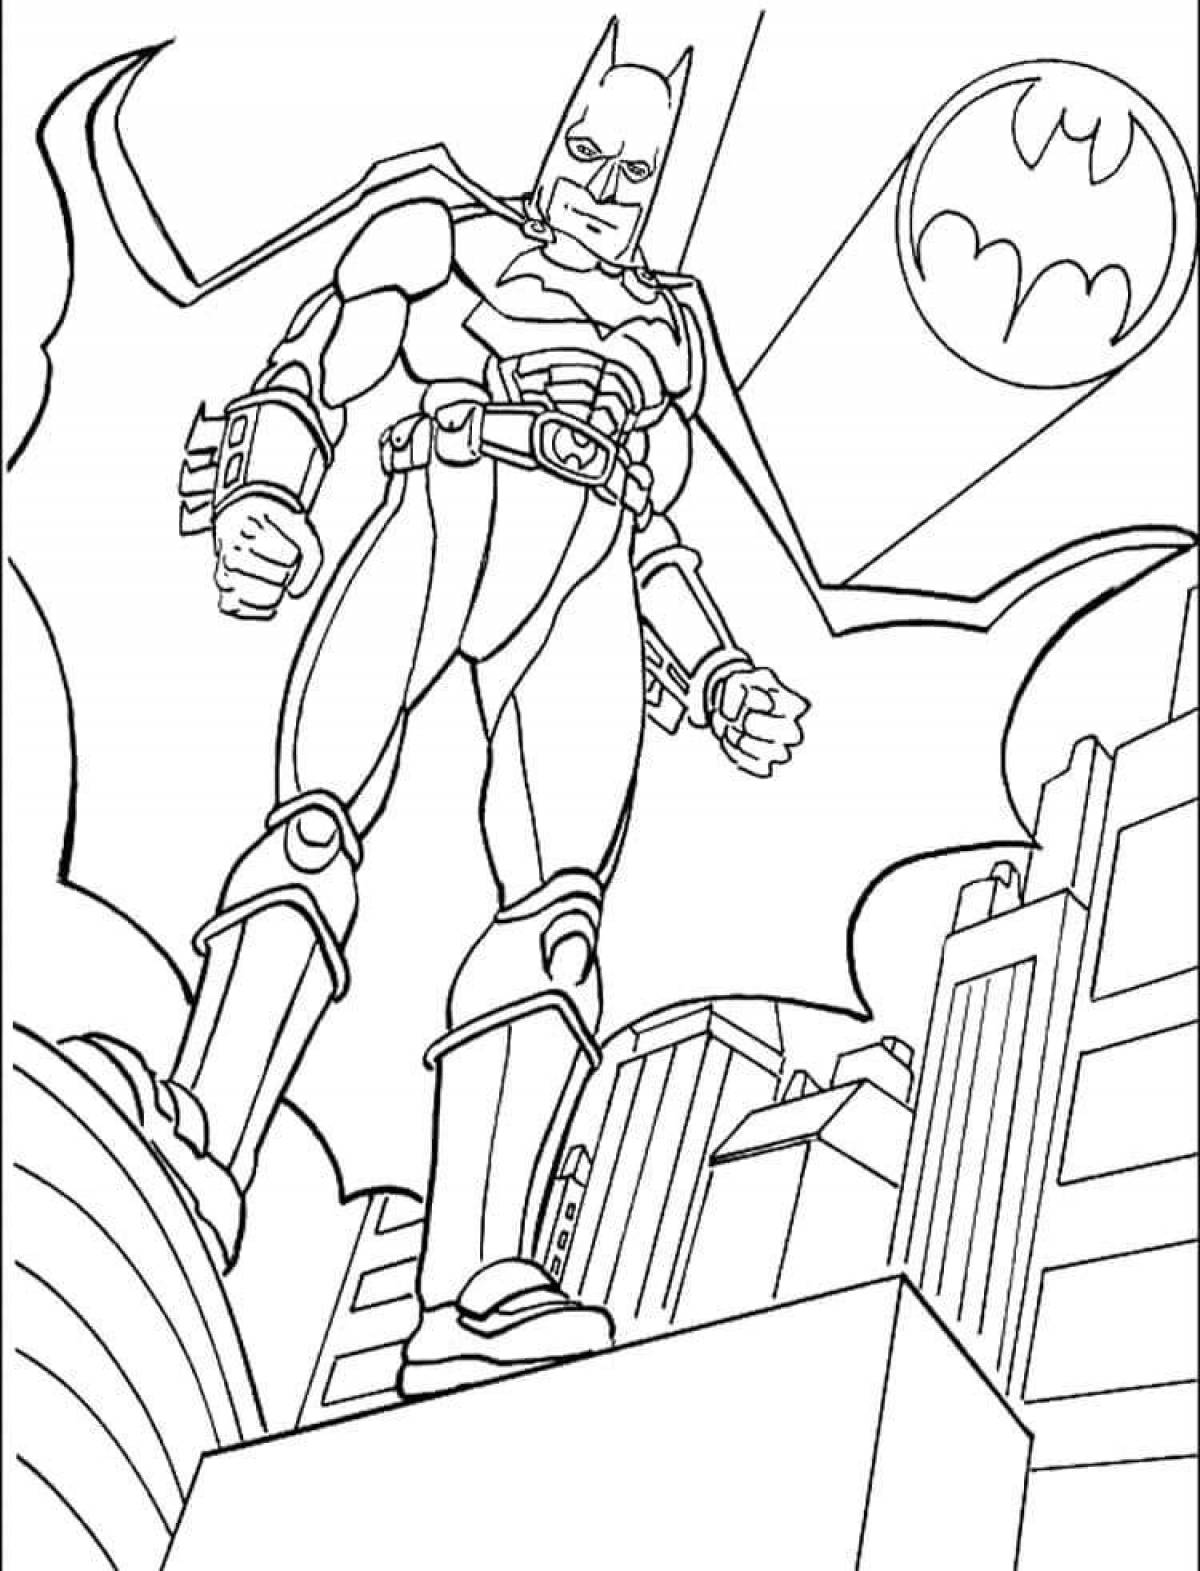 Grand Batman coloring book